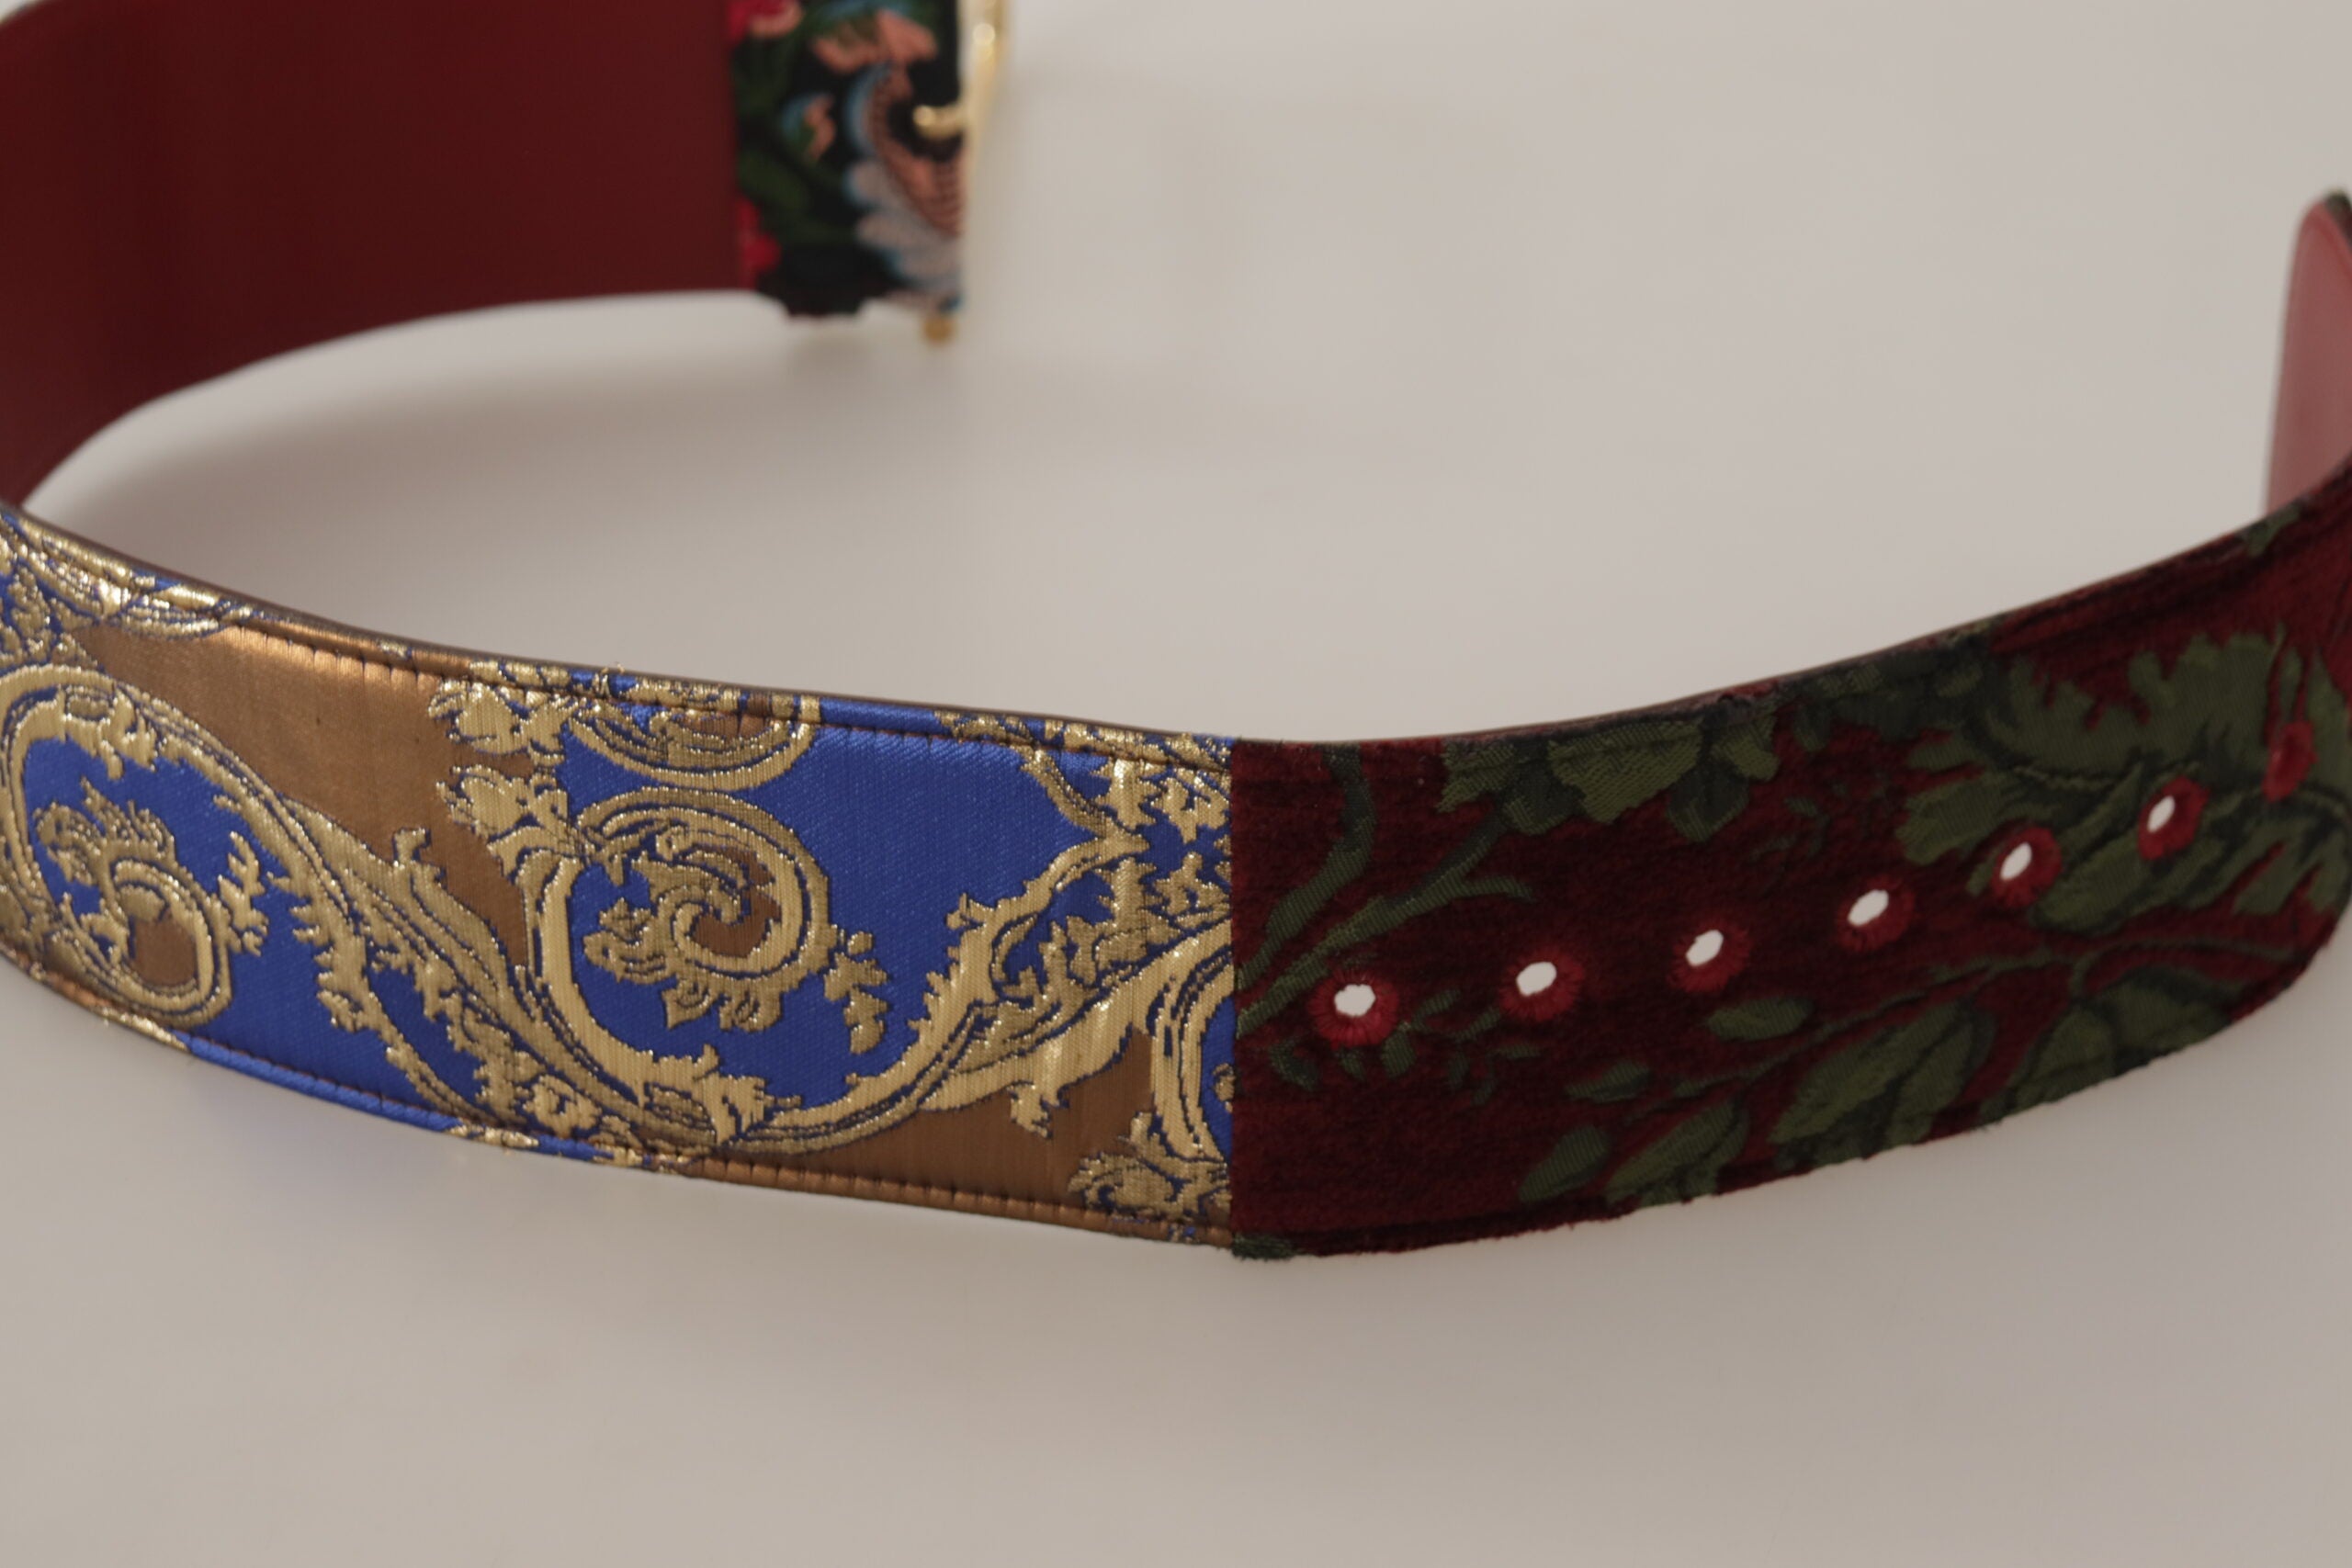 Dolce & Gabbana Engraved Logo Multicolor Leather Belt